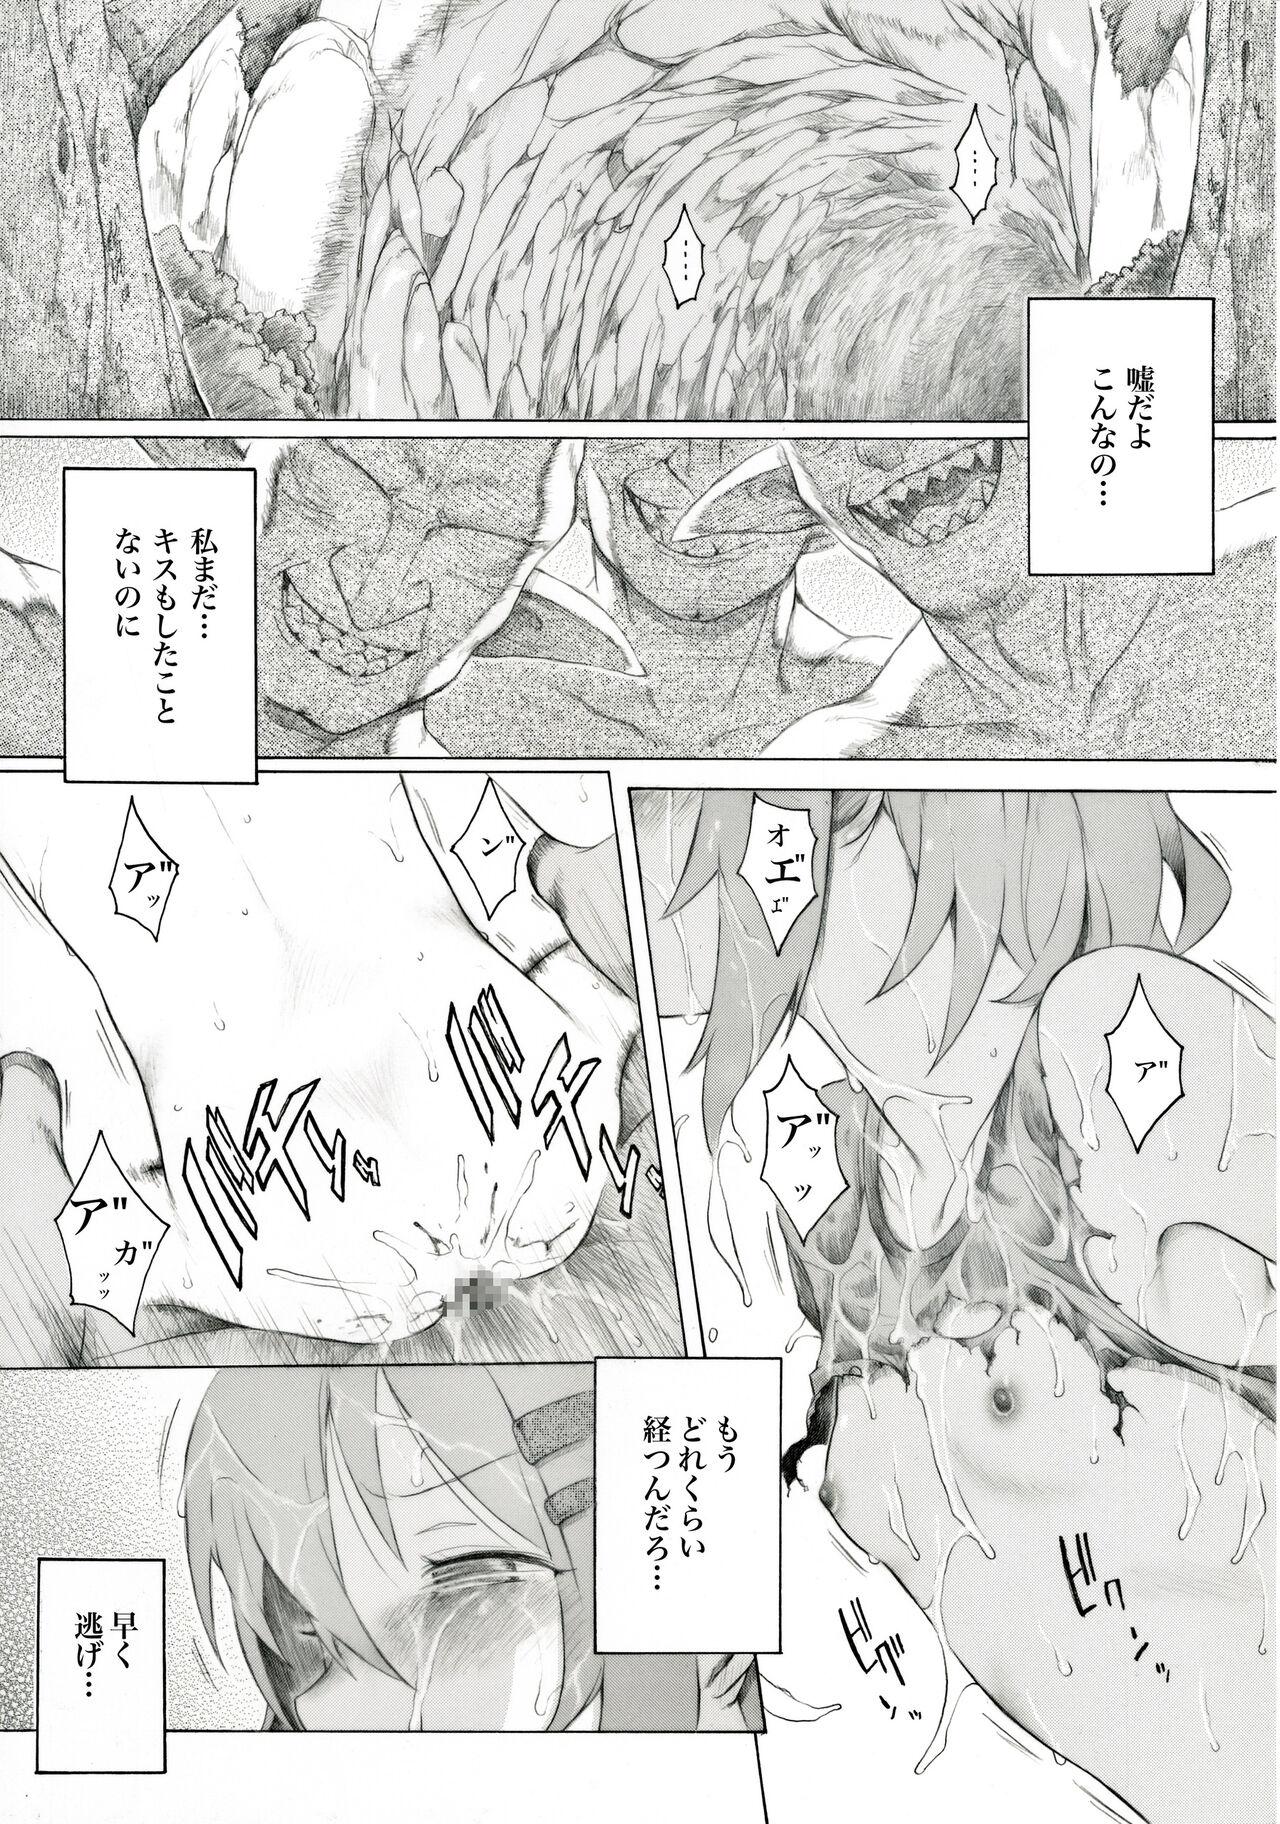 The Aoi-chan no Chotto Shita Nichijou - Yama no susume Clitoris - Page 2